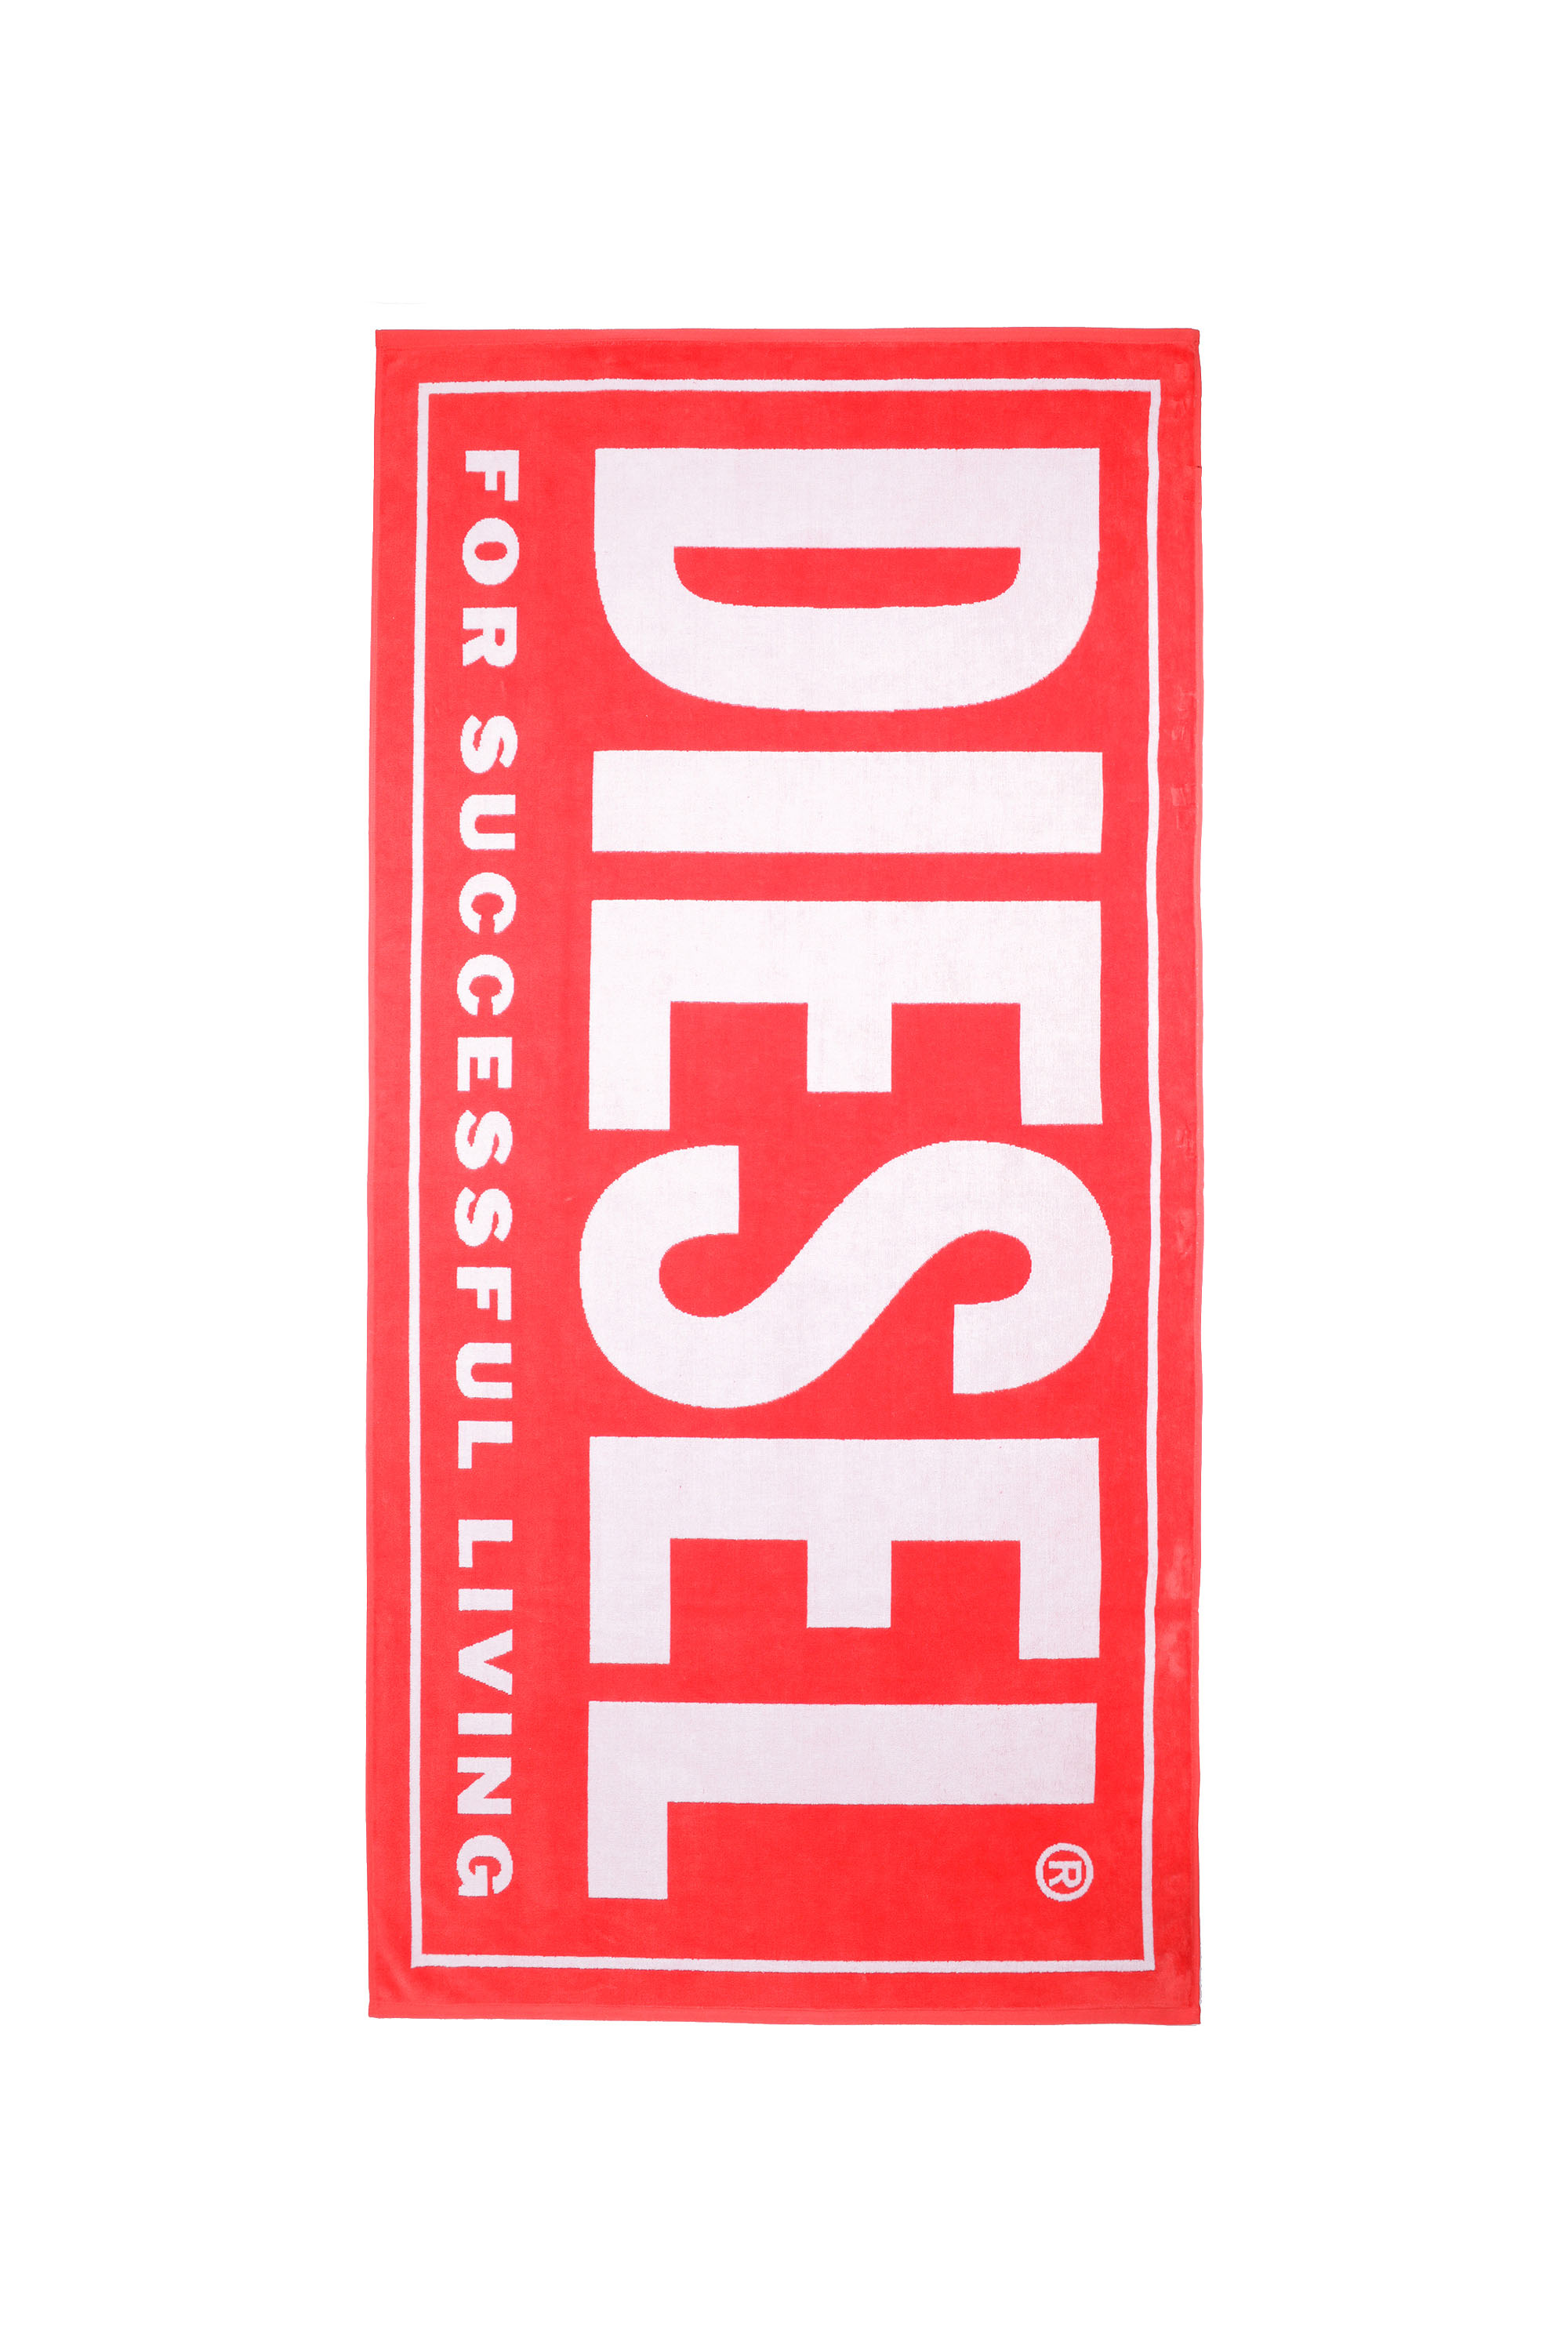 Diesel - BMT-HELLERI, Red/White - Image 1